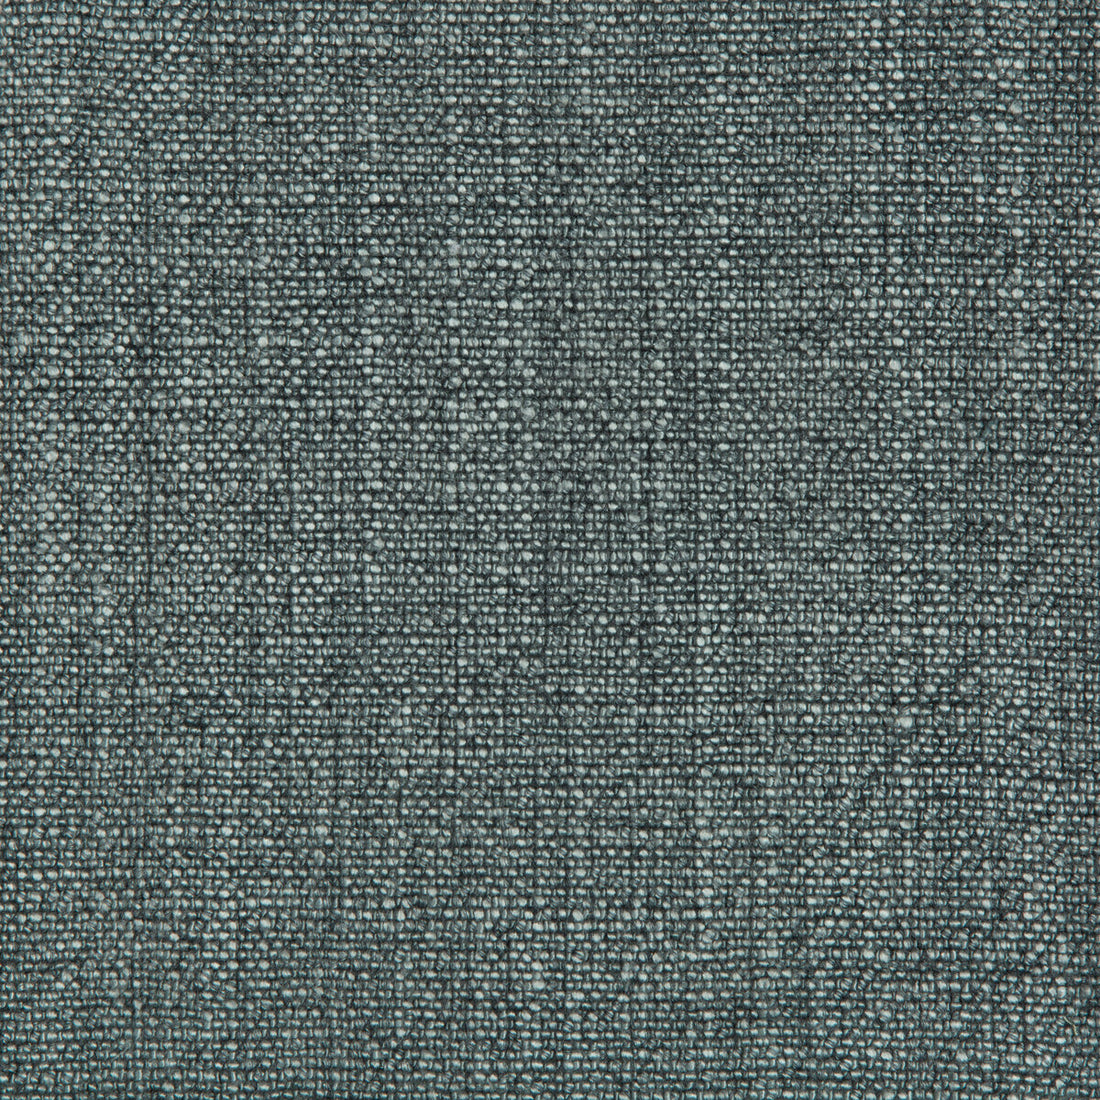 Kravet Basics fabric in 35189-35 color - pattern 35189.35.0 - by Kravet Basics